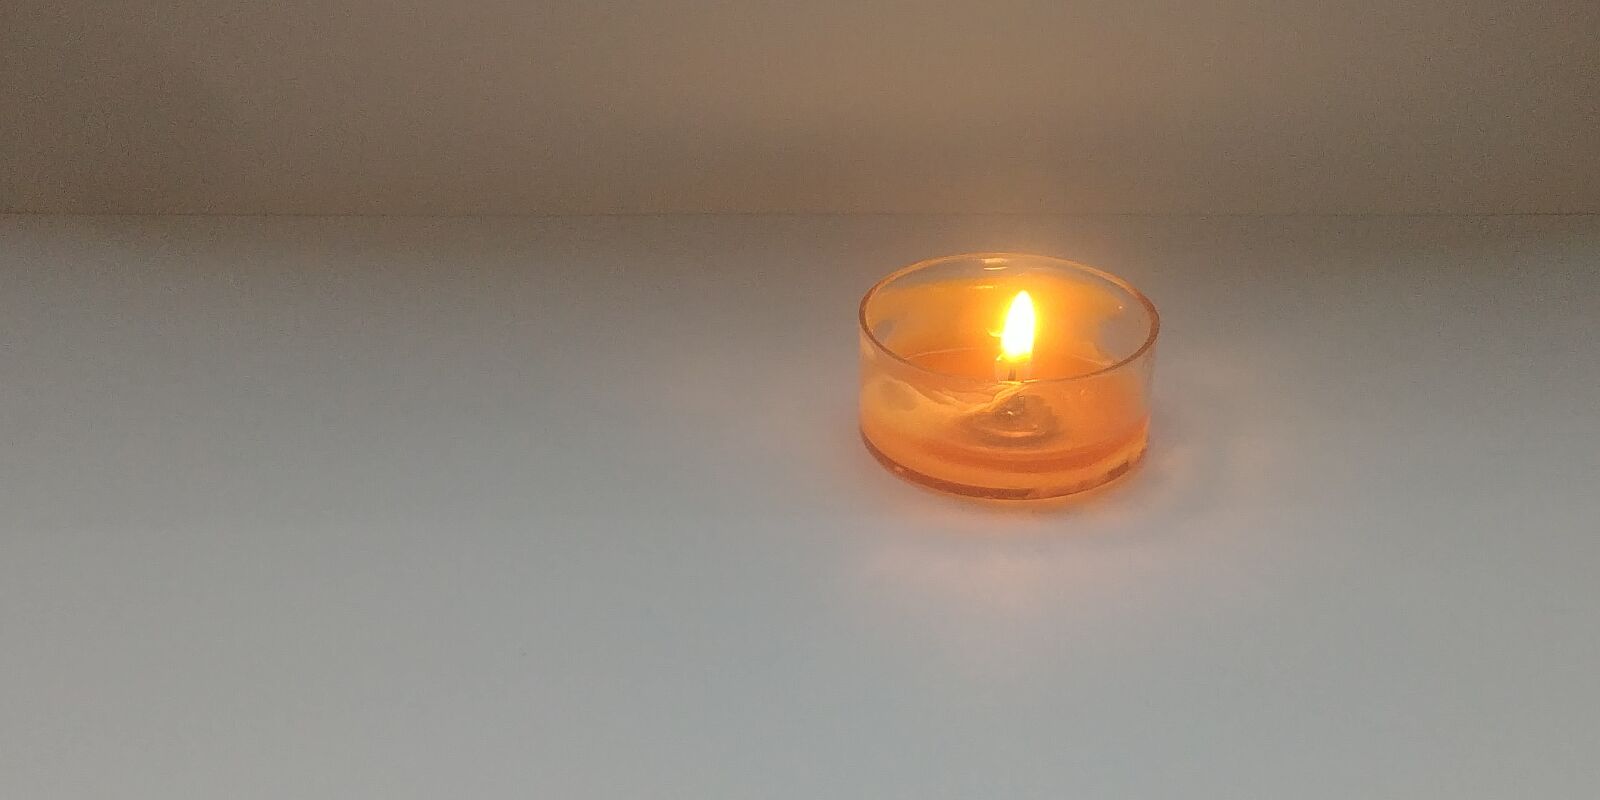 LG G6 sample photo. Candle, melt, orange photography